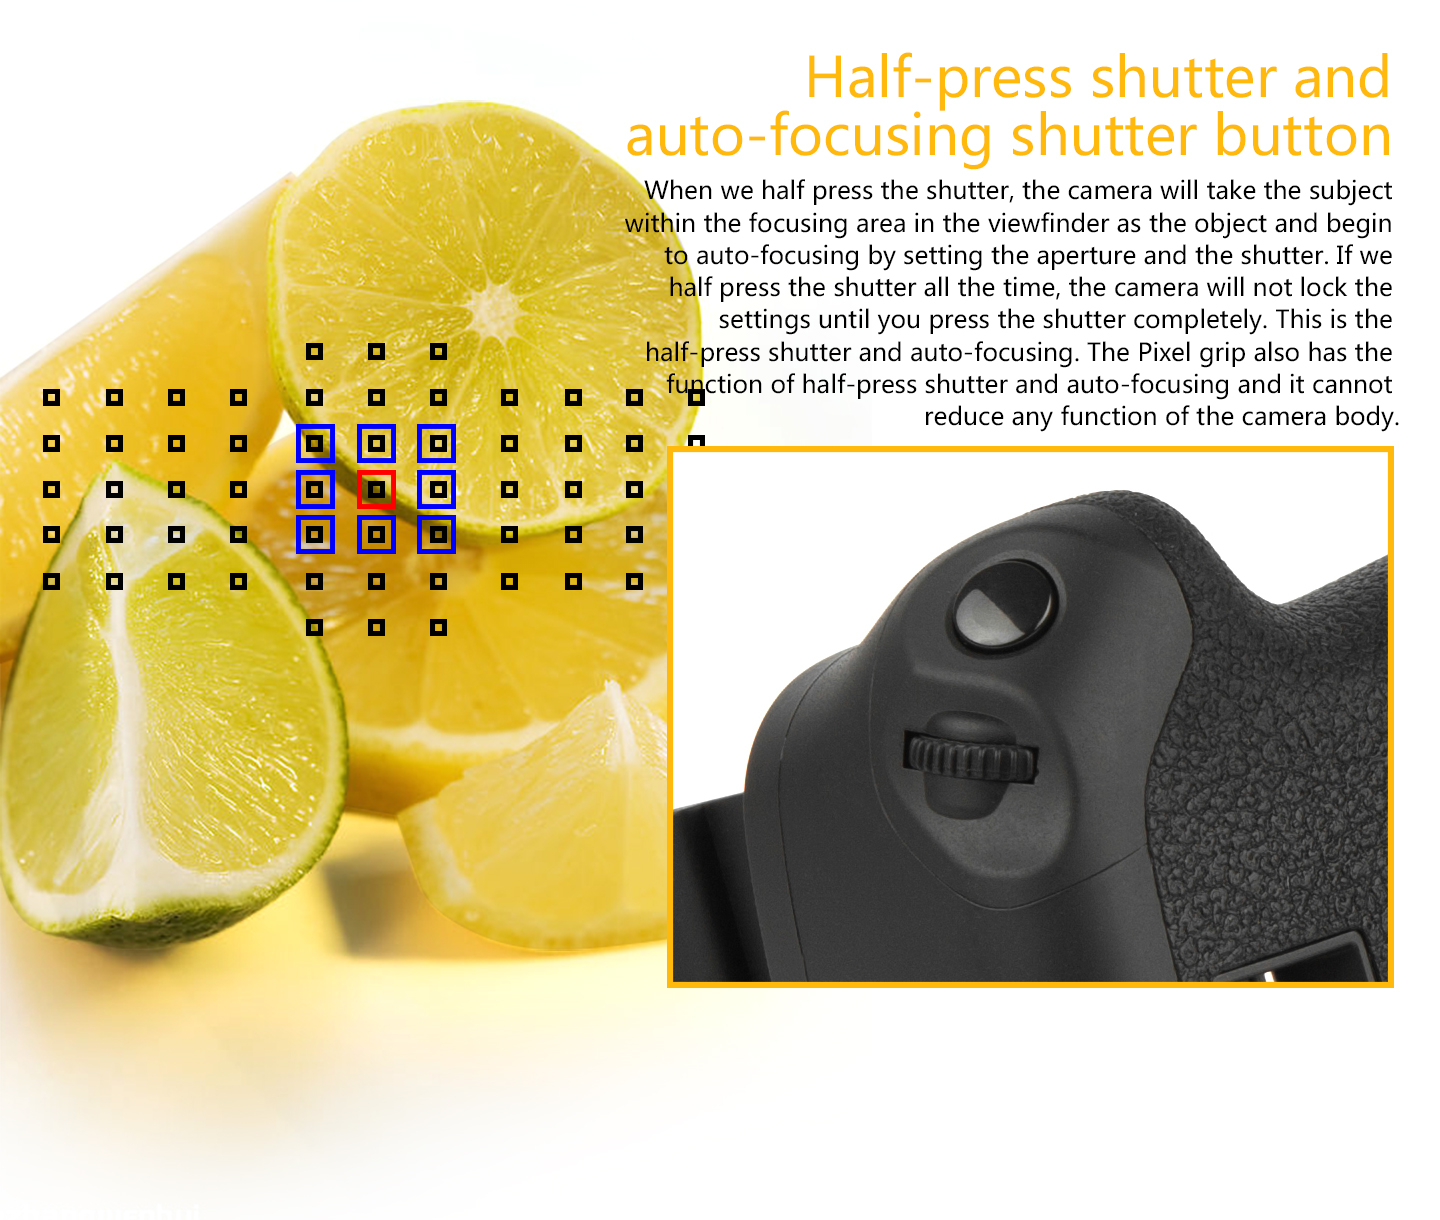 Half-press shutter and auto-focusing shutter button